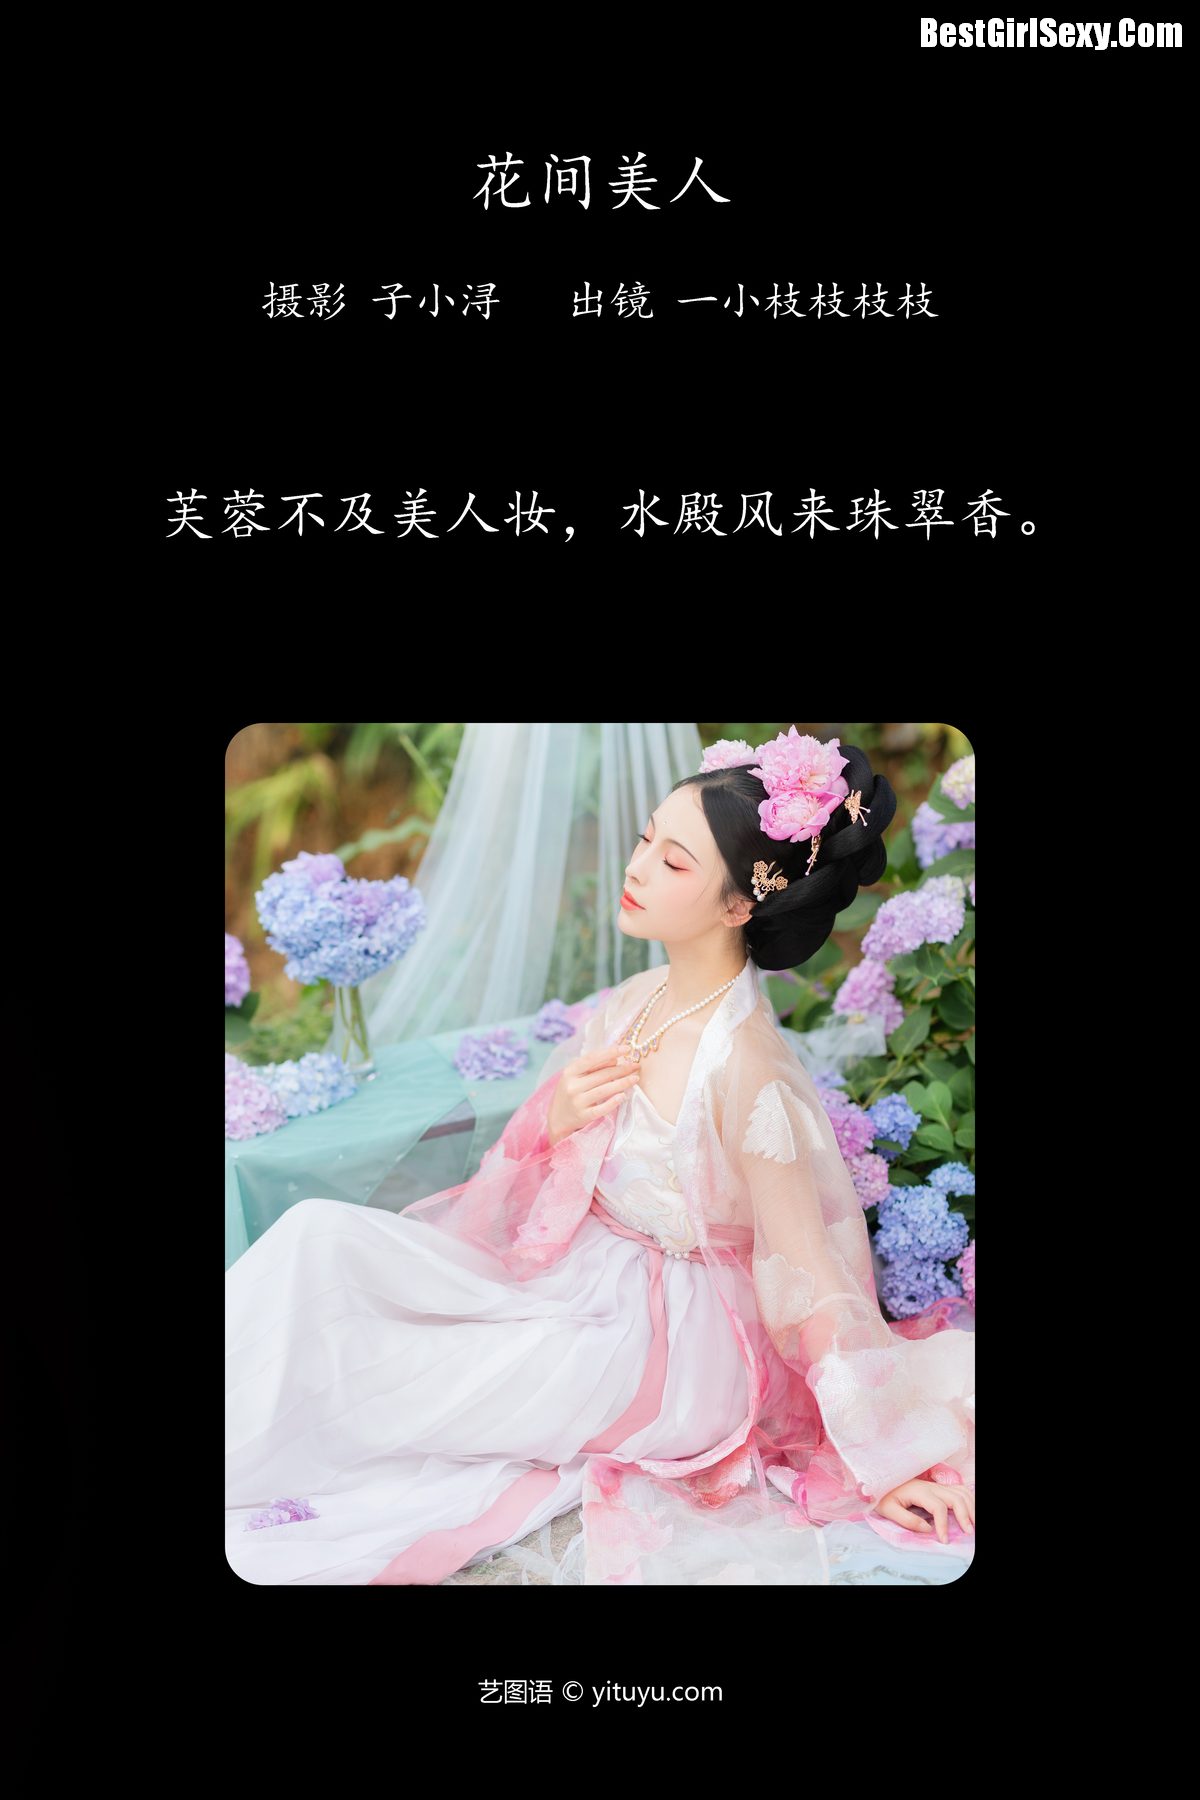 YiTuYu艺图语 Vol 4054 Yi Xiao Zhi Zhi Zhi Zhi 0002 4330043897.jpg